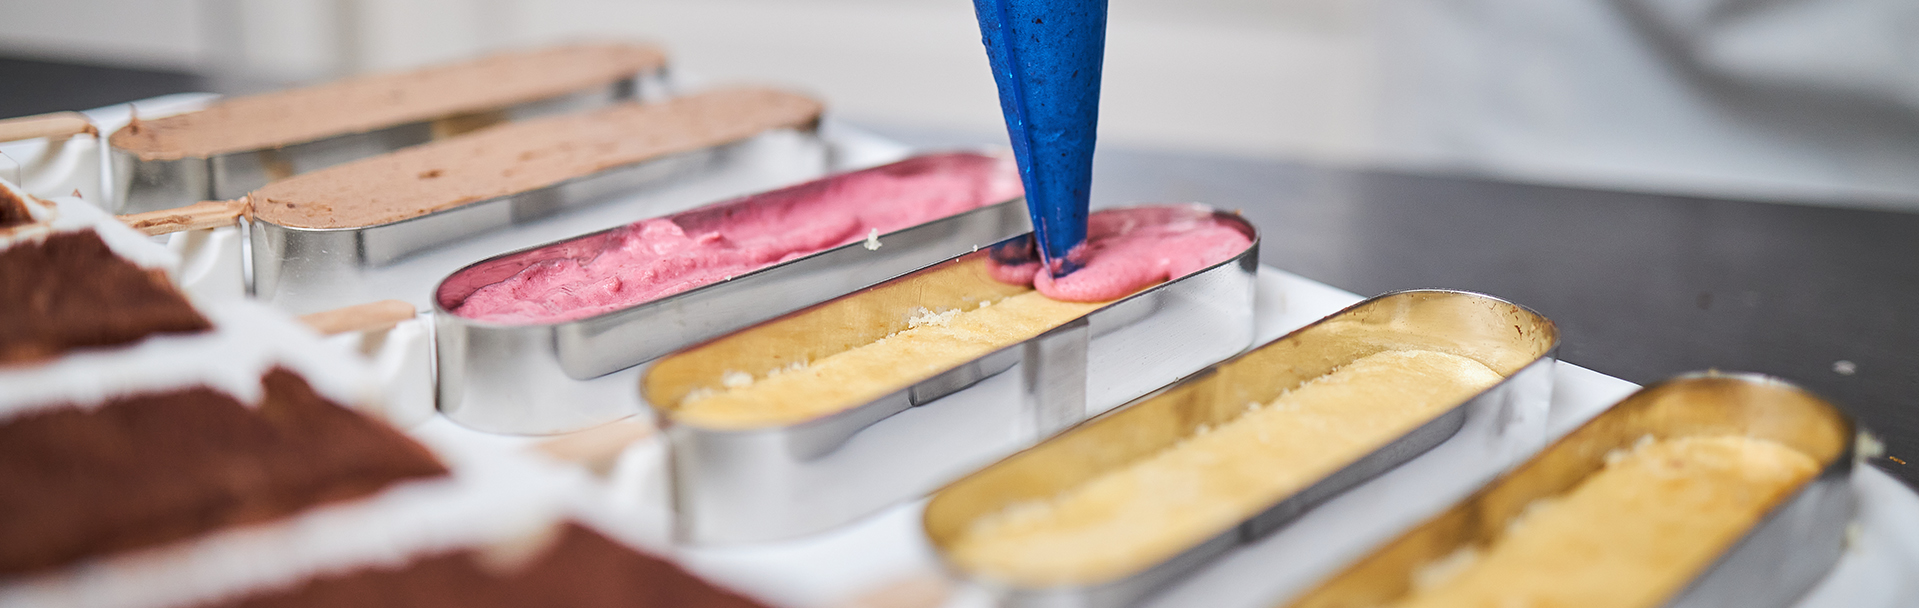 Caissette plissée couleurs Nordia pour Pâtisseries et Boulangeries TYPE N°8  Ronde DIM. mm ø40 x H 25 BOITE DE 1000 COULEUR Mandarine